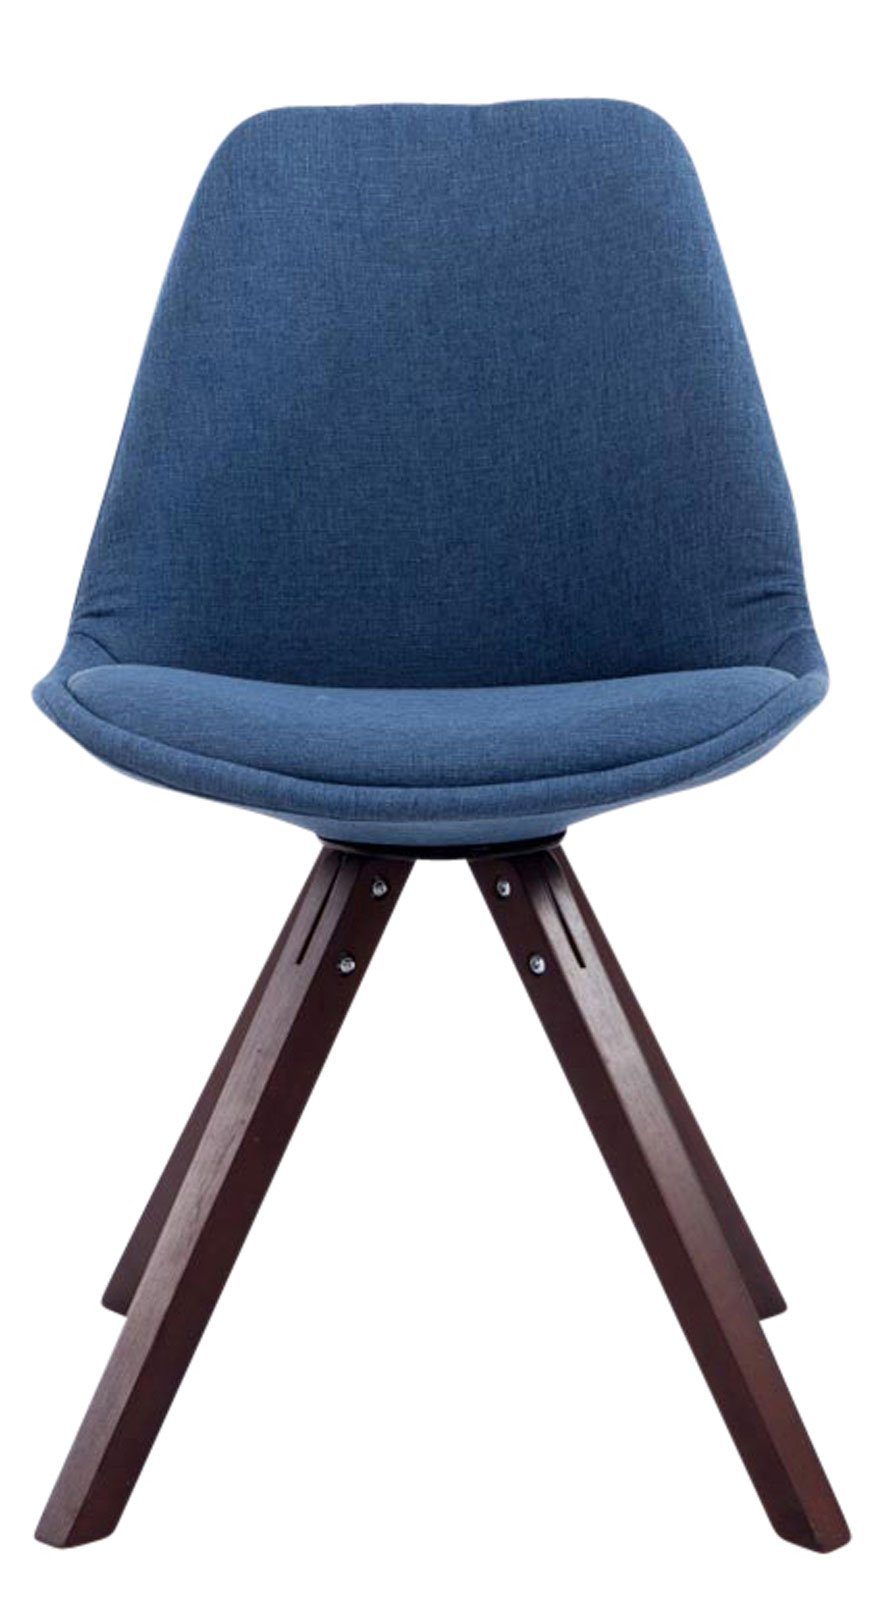 4 mit - (Küchenstuhl Konferenzstuhl Sitzfläche: Toulon gepolsterter Besucherstuhl - Buchenholz Gestell: Esszimmerstuhl TPFLiving Sitzfläche Cappuccino Stoff Wohnzimmerstuhl, St), - blau - hochwertig